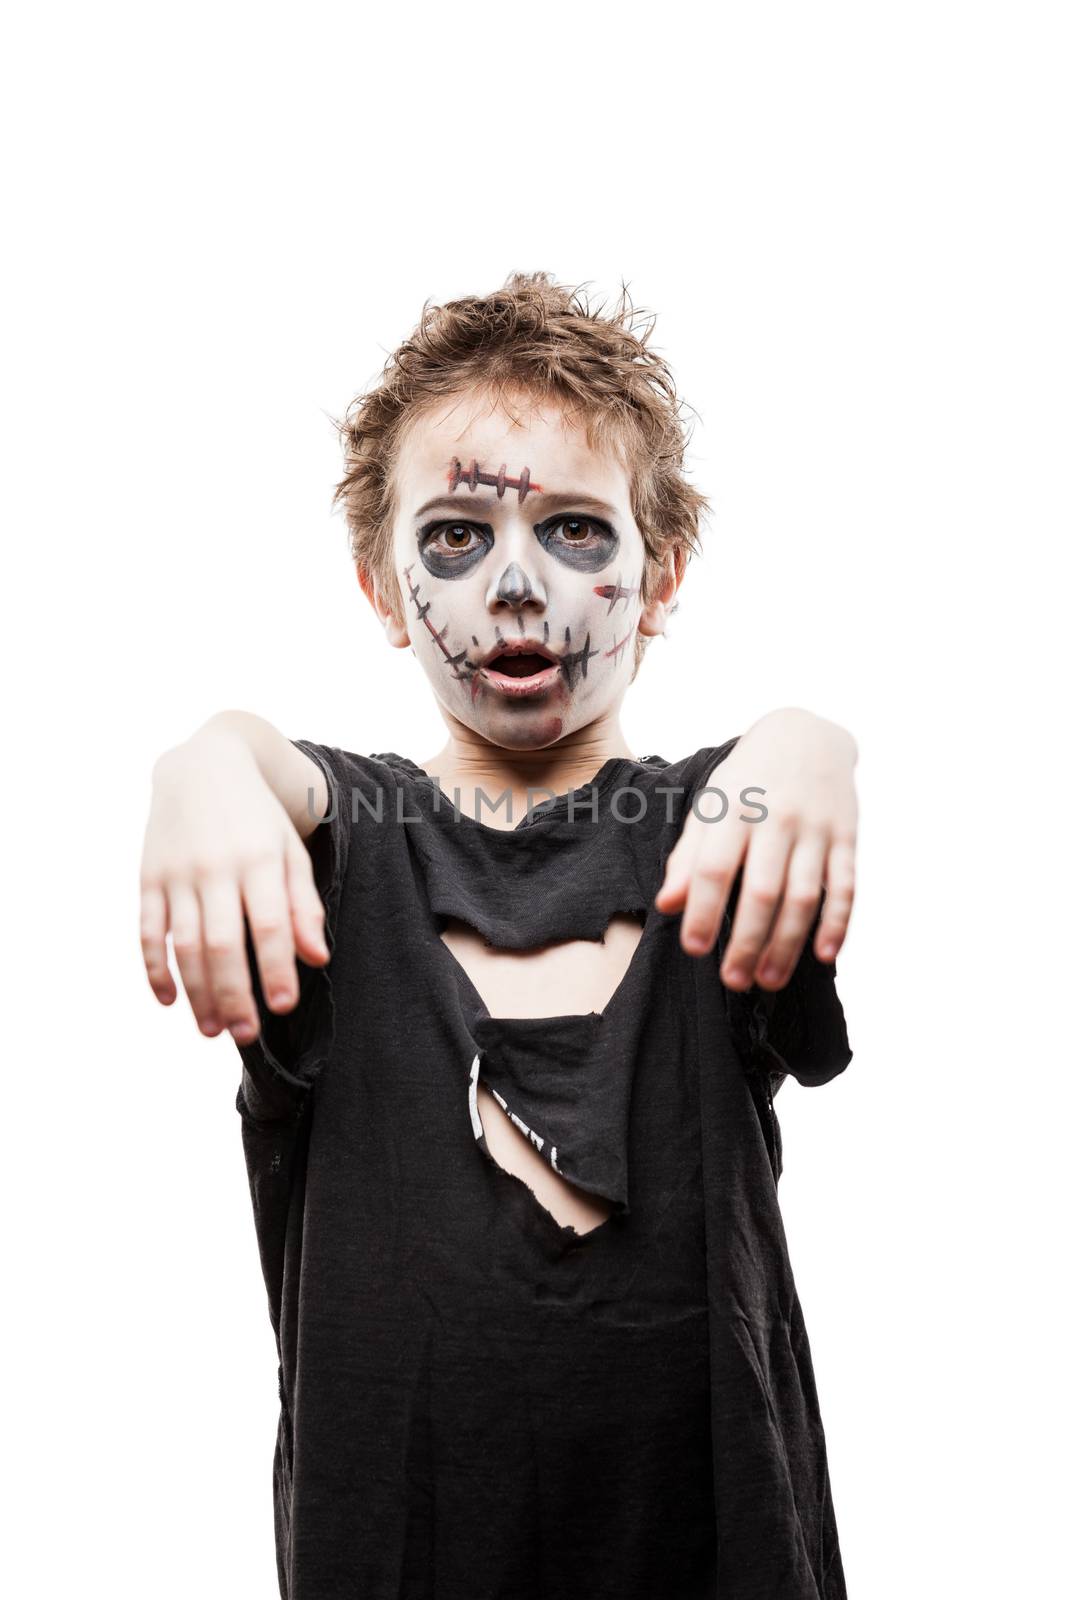 Screaming walking dead zombie child boy halloween horror costume by ia_64